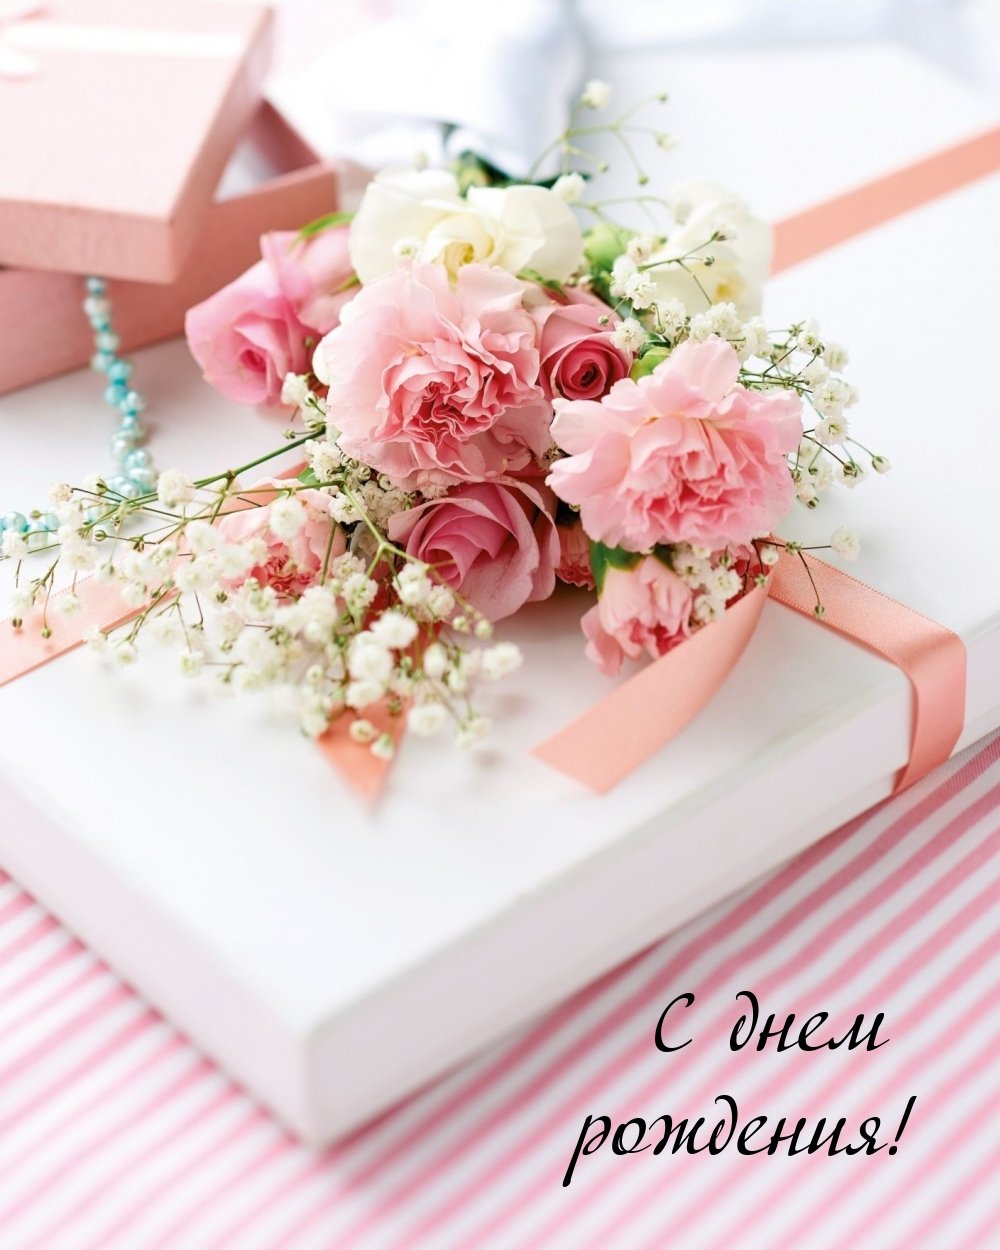 Открытки с днем рождения нежные цветы | С днем рождения, Цветы, Открытки